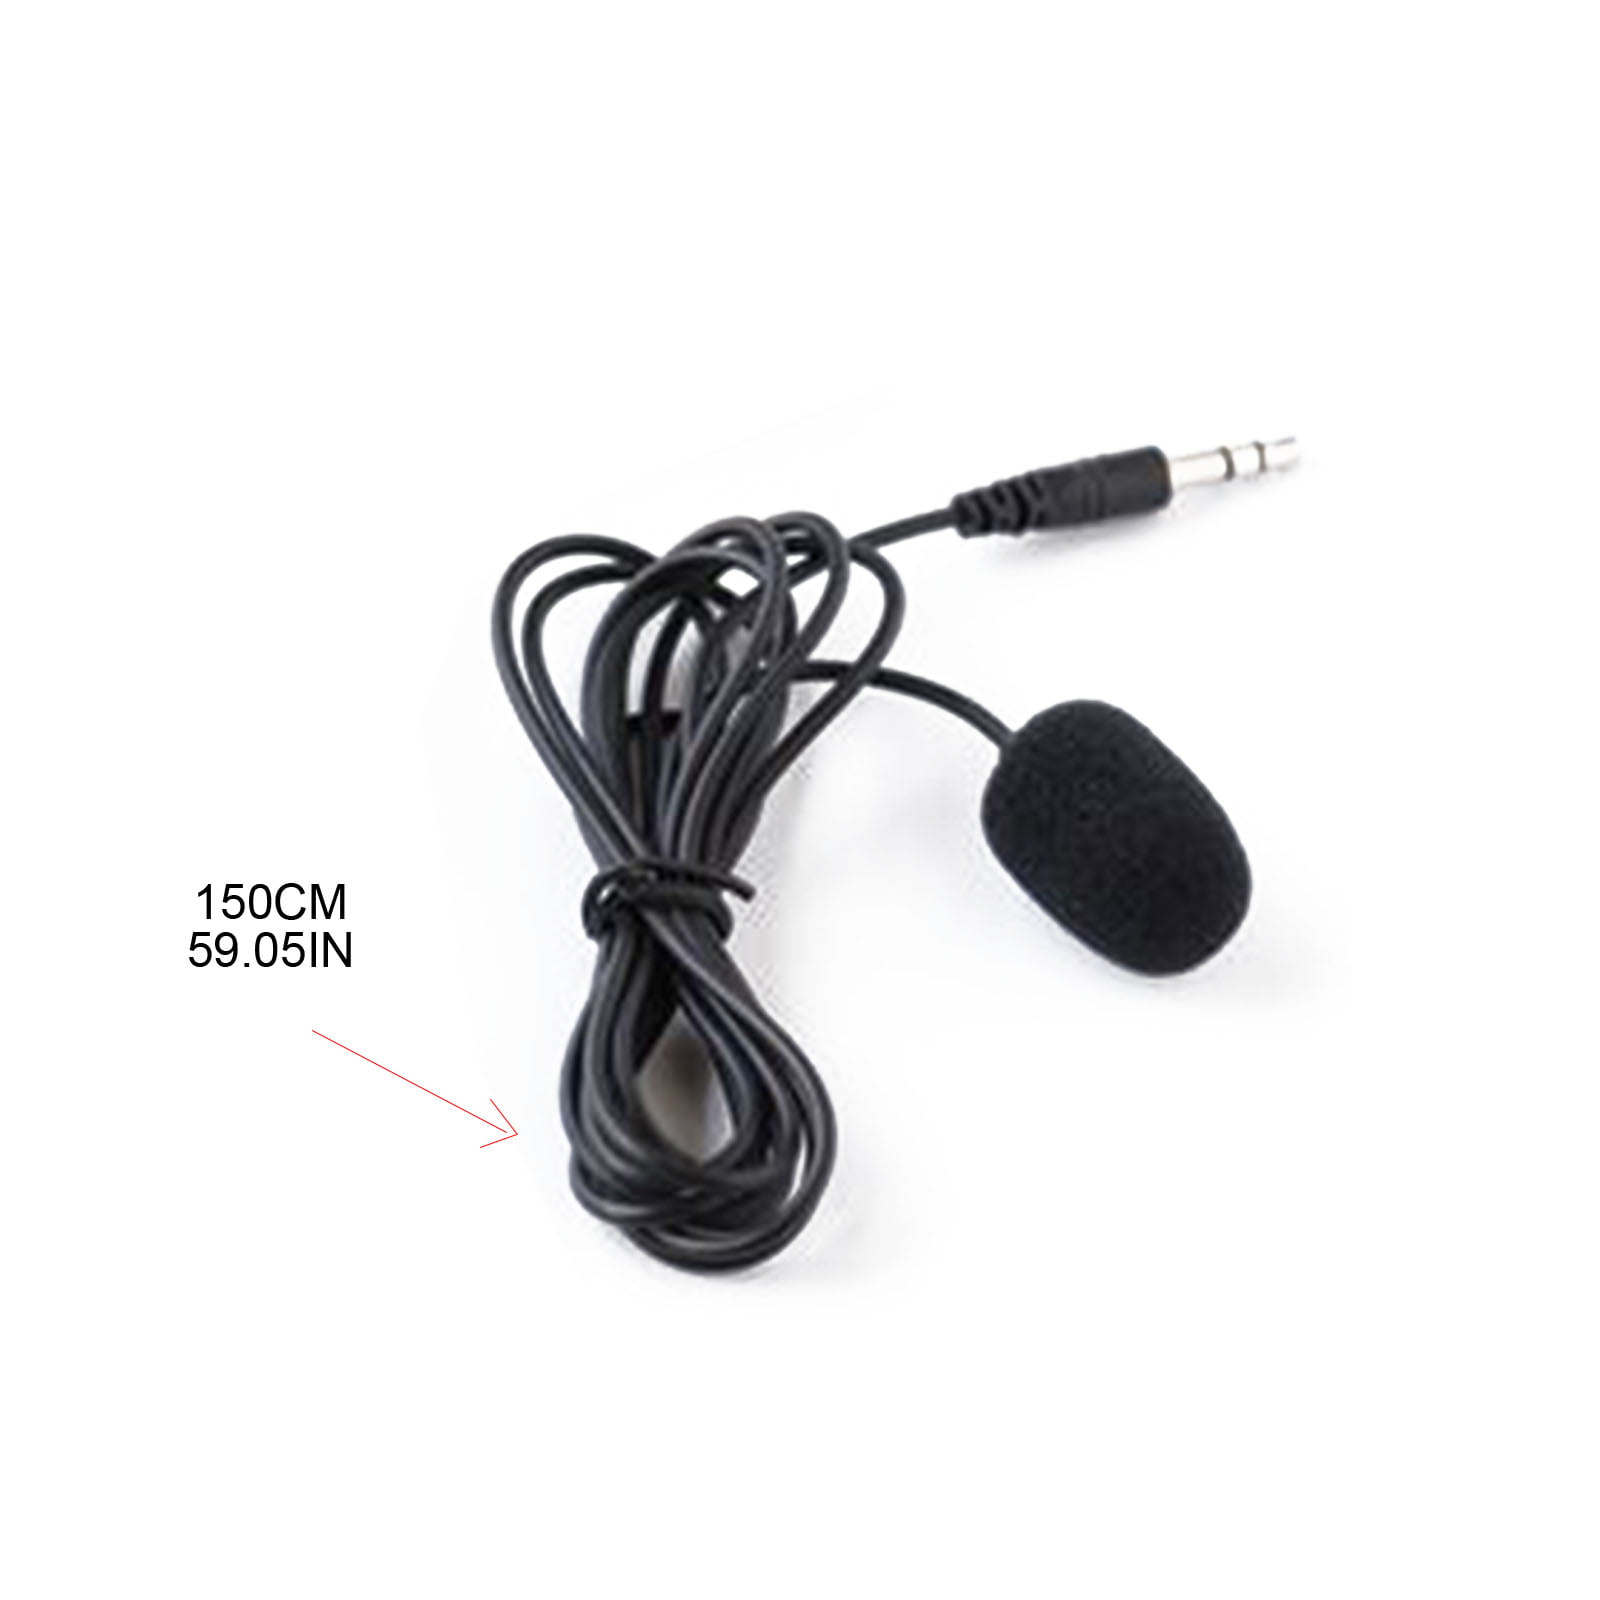 Adaptateur audio de voiture ESTINK, adaptateur audio de cble AUX Bluetooth  5.0 avec microphone de remplacement mains libres pour A4 B7 TTs TT A8 R8  A3, cble audio auxiliaire 